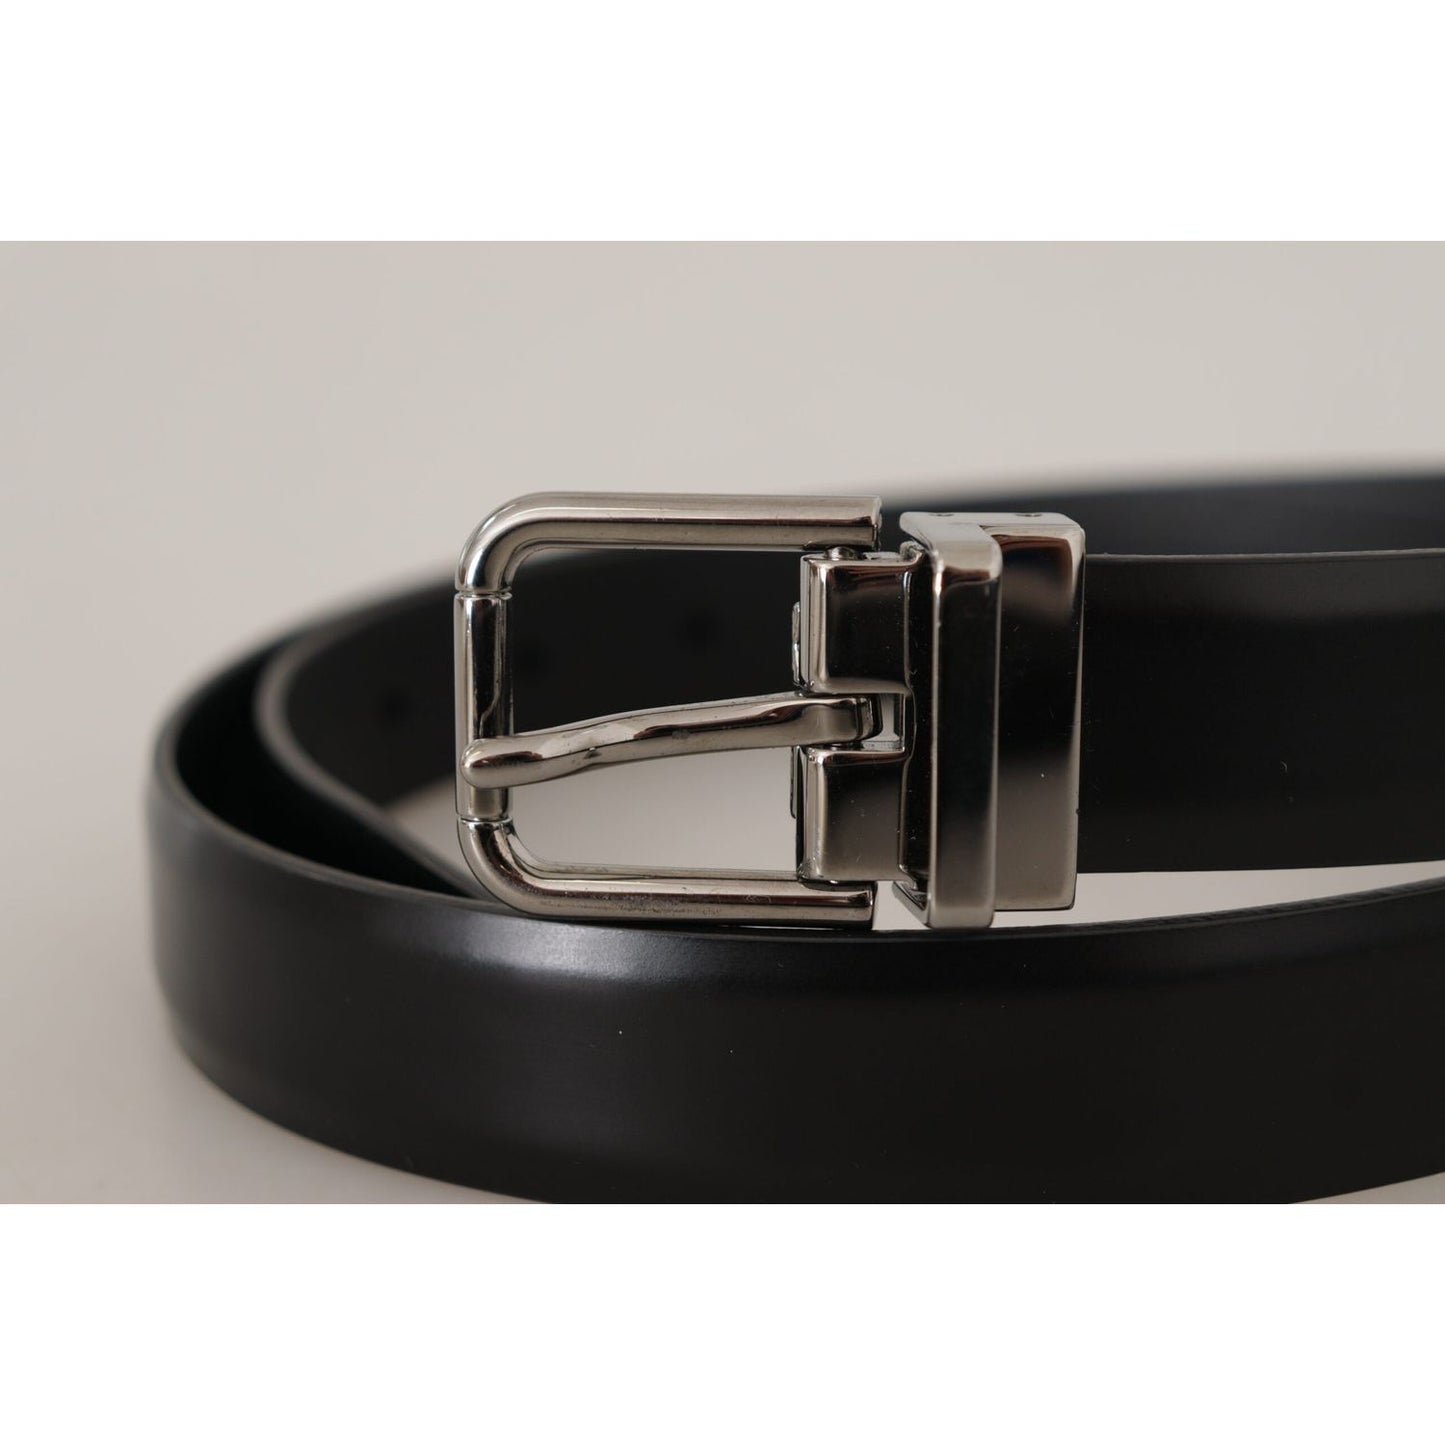 Dolce & Gabbana Elegant Black Leather Belt with Metal Buckle black-calf-leather-metal-logo-buckle-belt